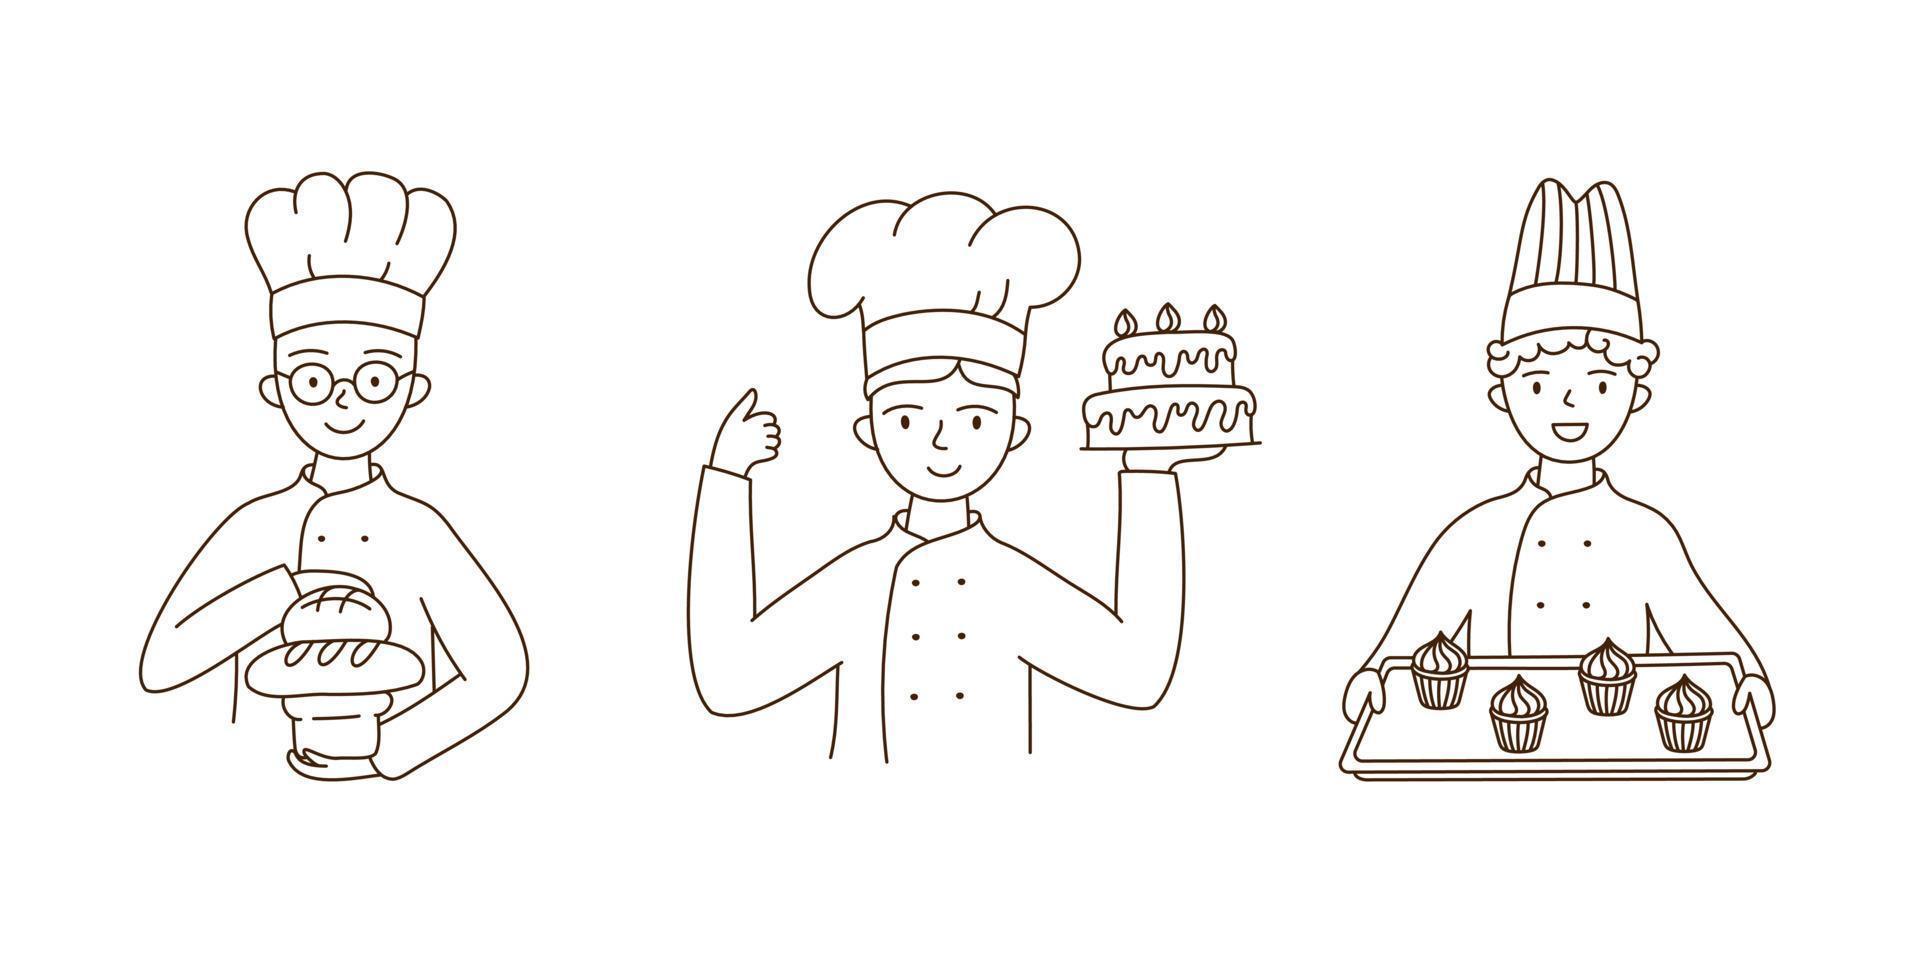 mettere i fornai in uniforme da chef con vari prodotti da forno. per la panetteria, pubblicità, sito web. illustrazione vettoriale